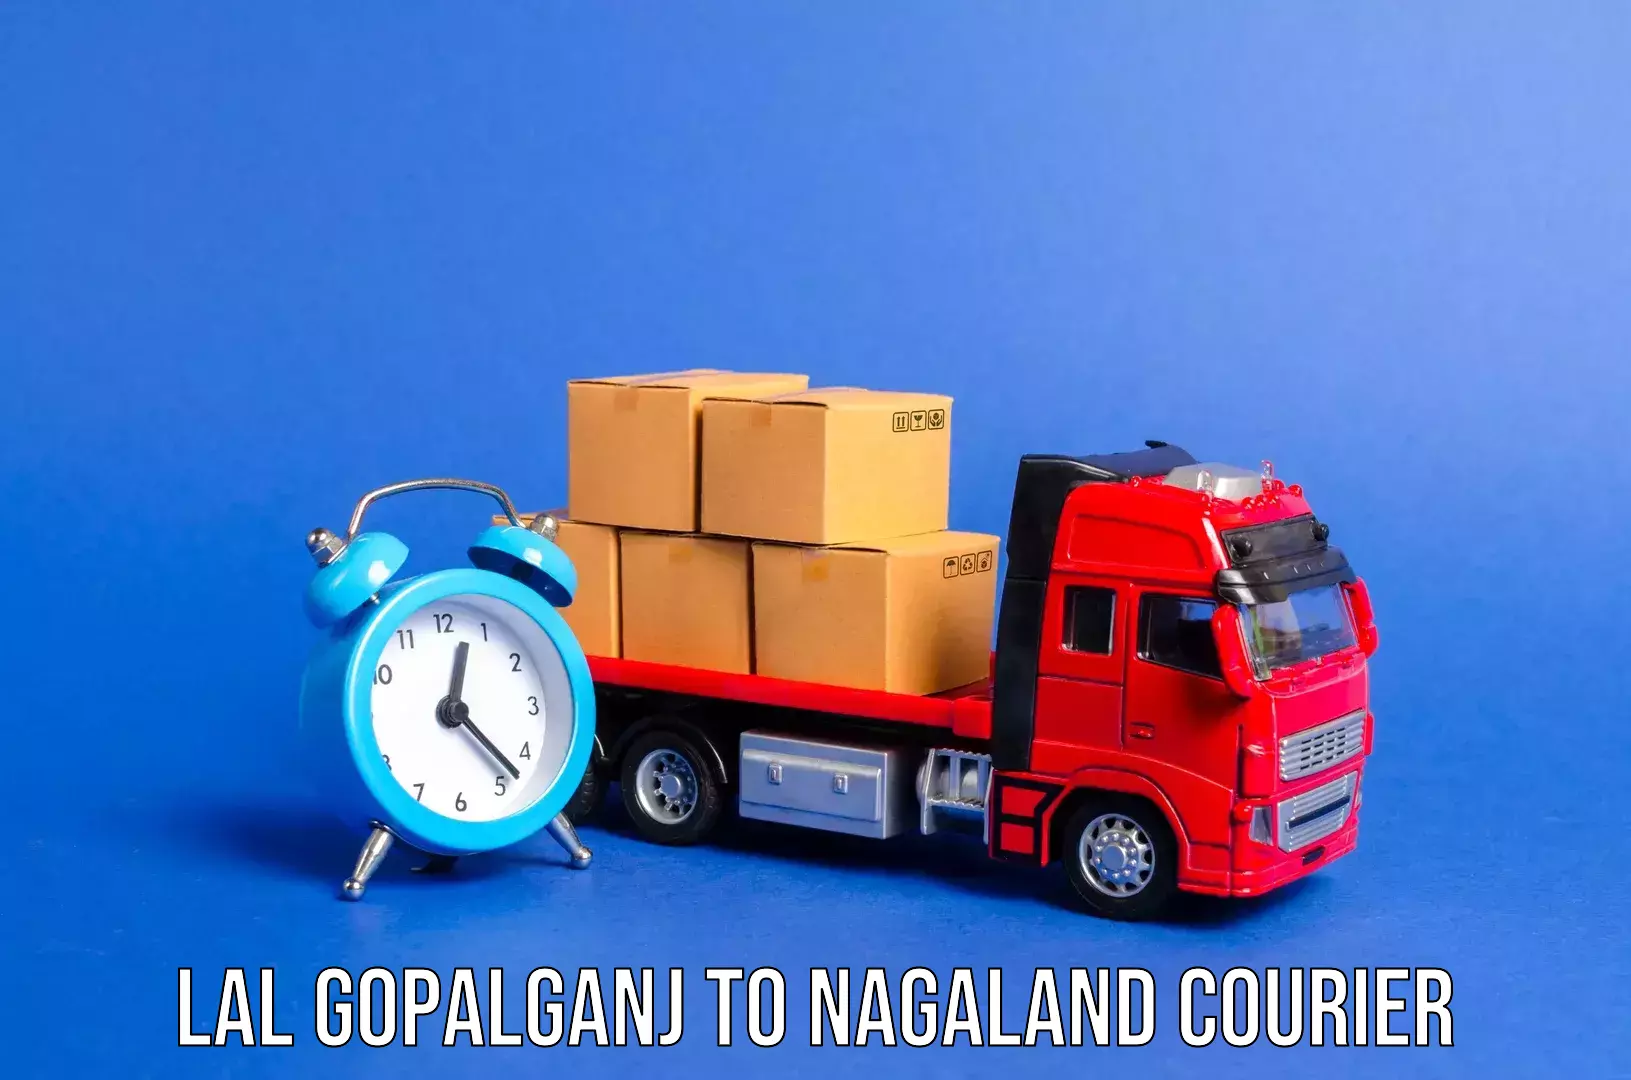 Luggage delivery operations Lal Gopalganj to Chumukedima